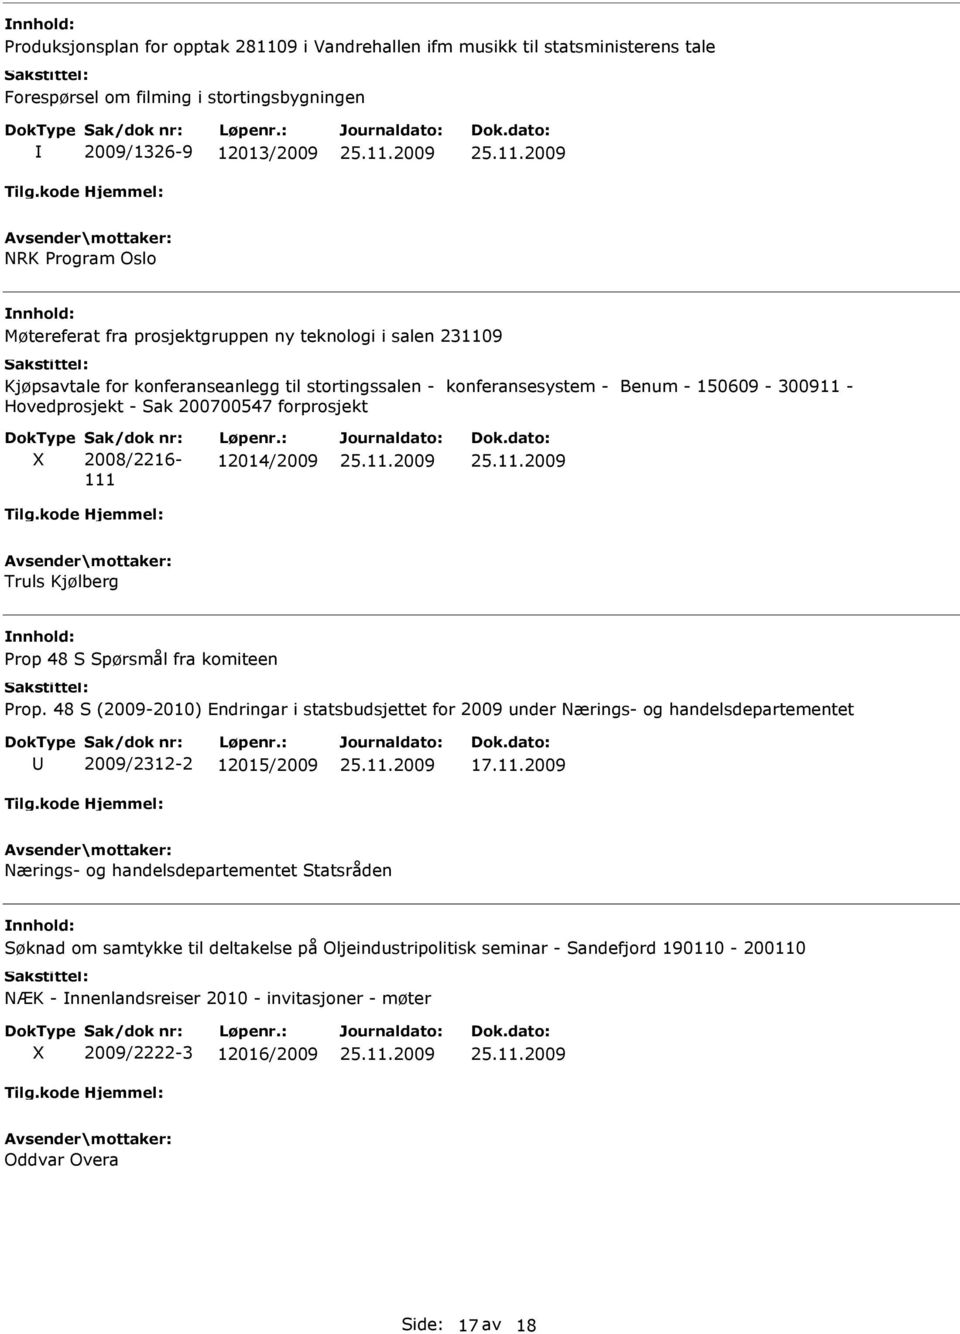 12014/2009 Truls Kjølberg Prop 48 S Spørsmål fra komiteen Prop. 48 S (2009-2010) Endringar i statsbudsjettet for 2009 under Nærings- og handelsdepartementet 2009/2312-2 12015/2009 17.11.